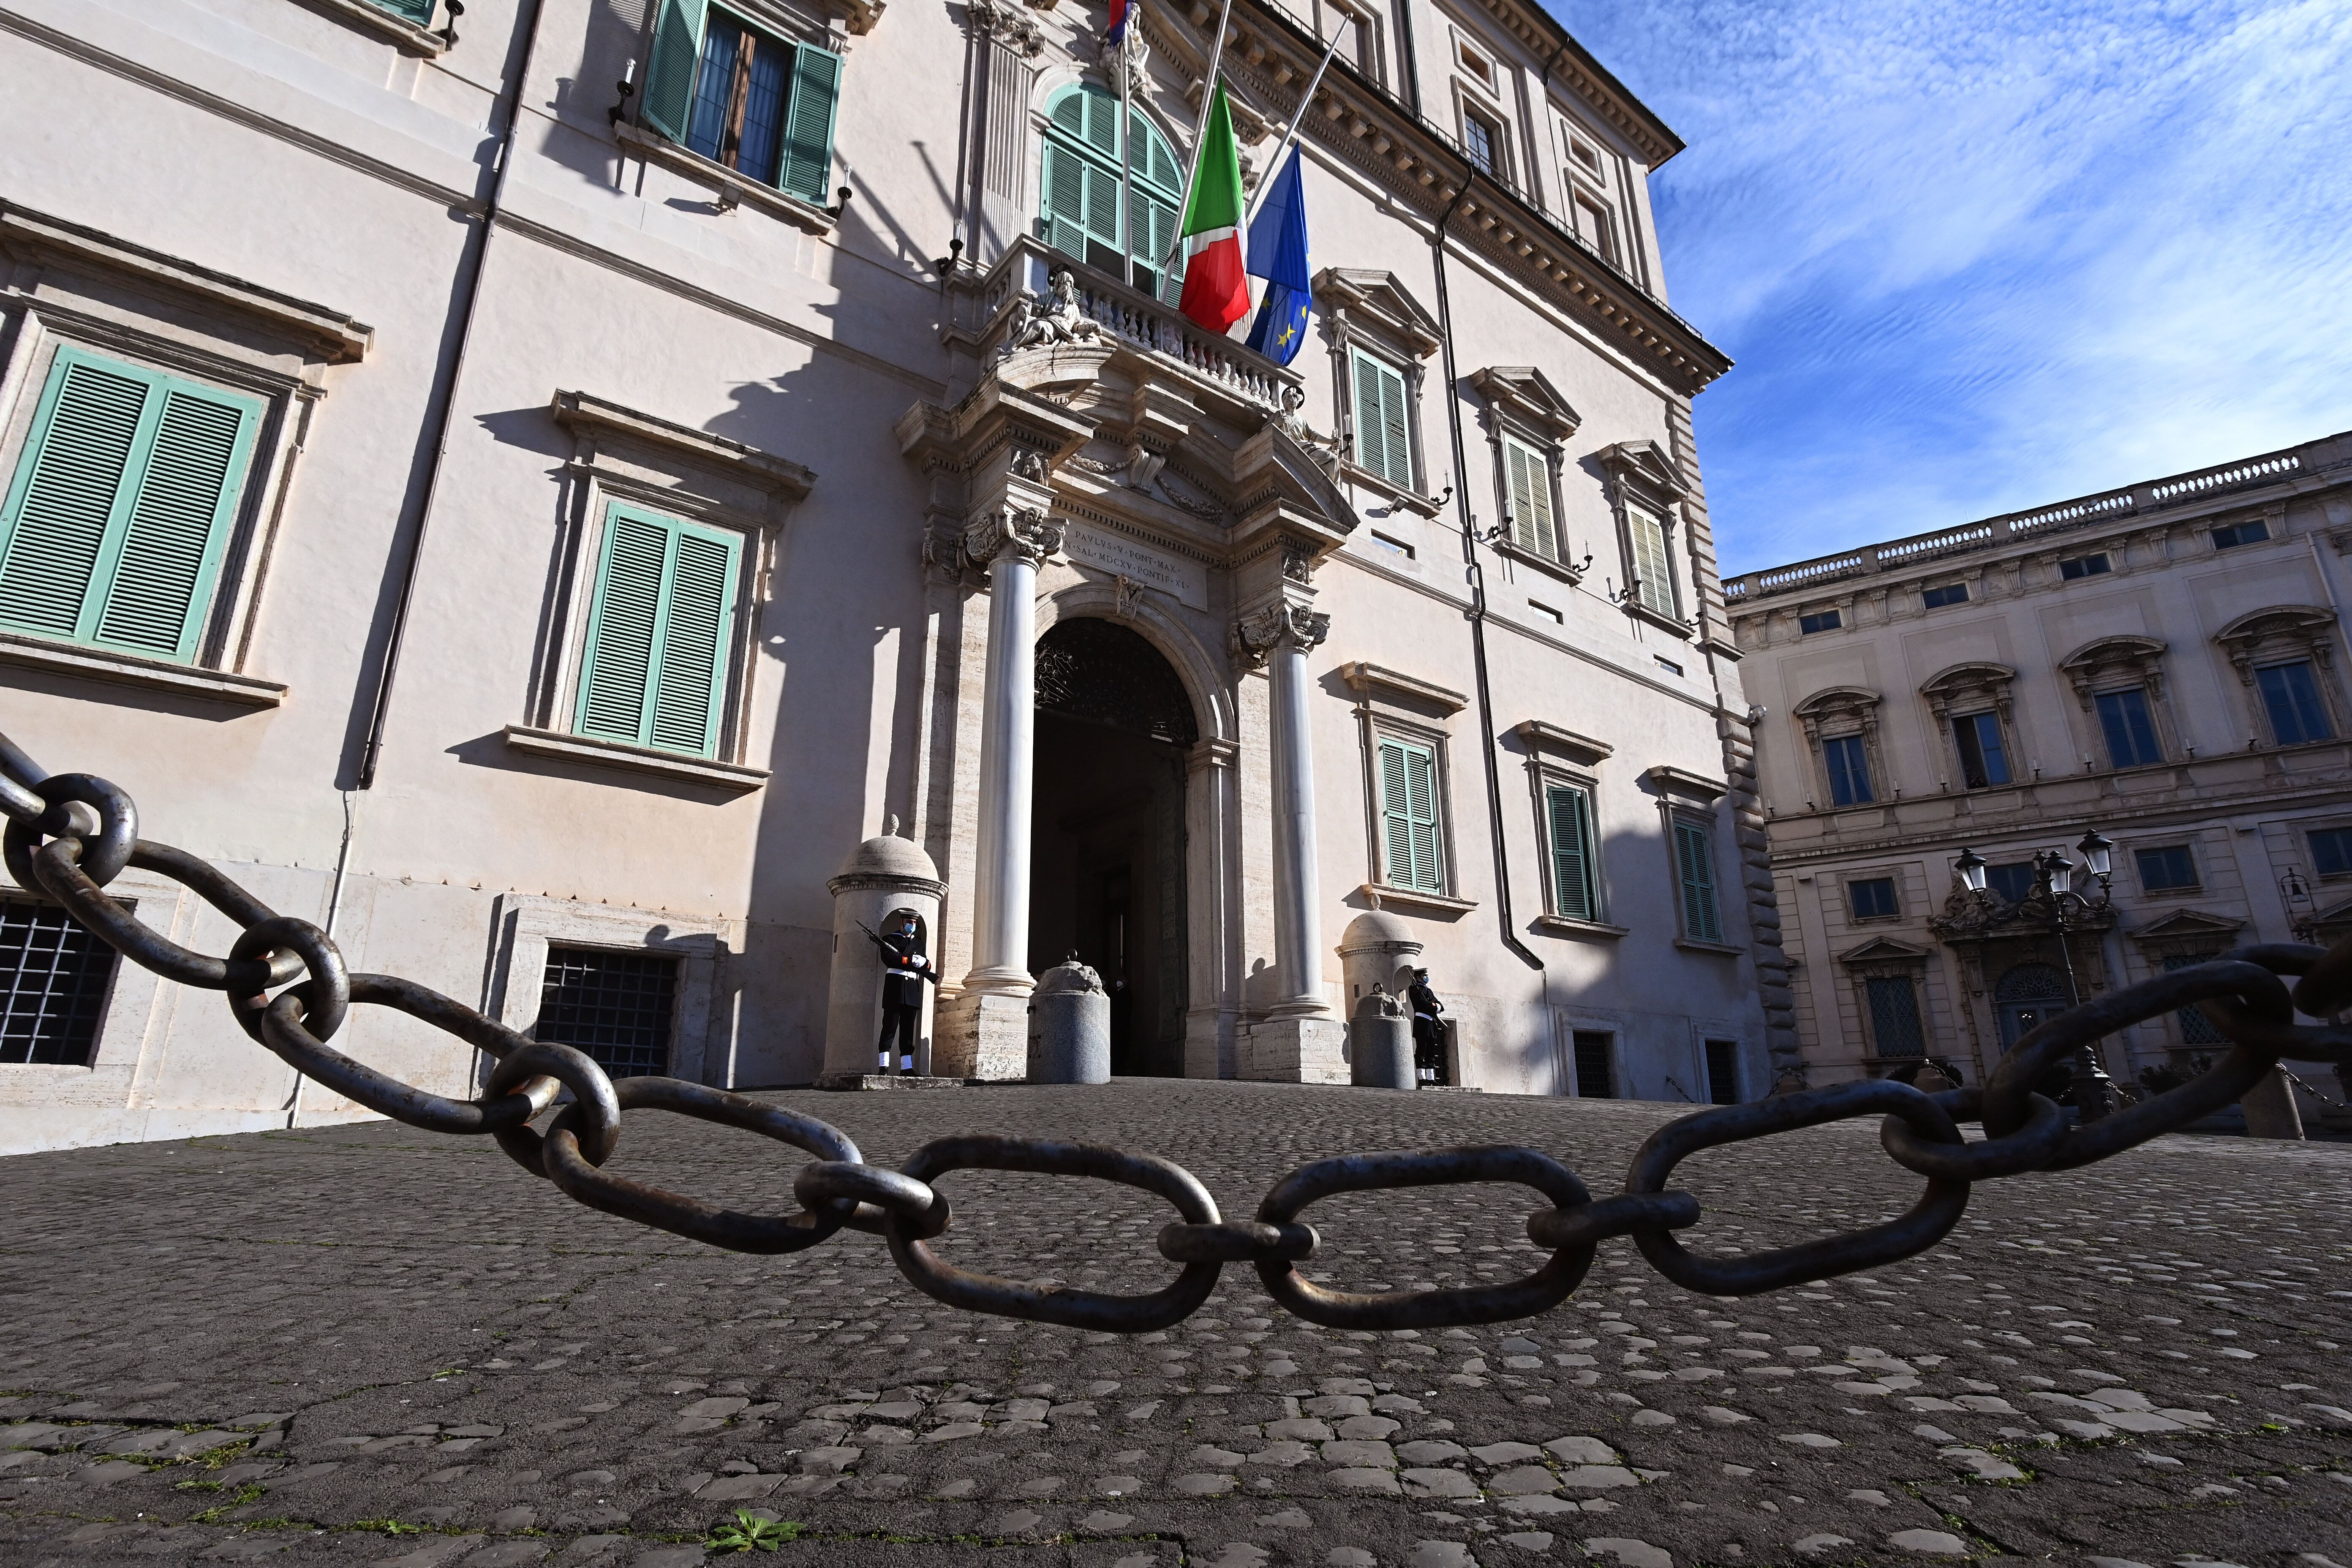 Devant le palais présidentiel du Quirinale, à Rome en Italie, le 27 janvier